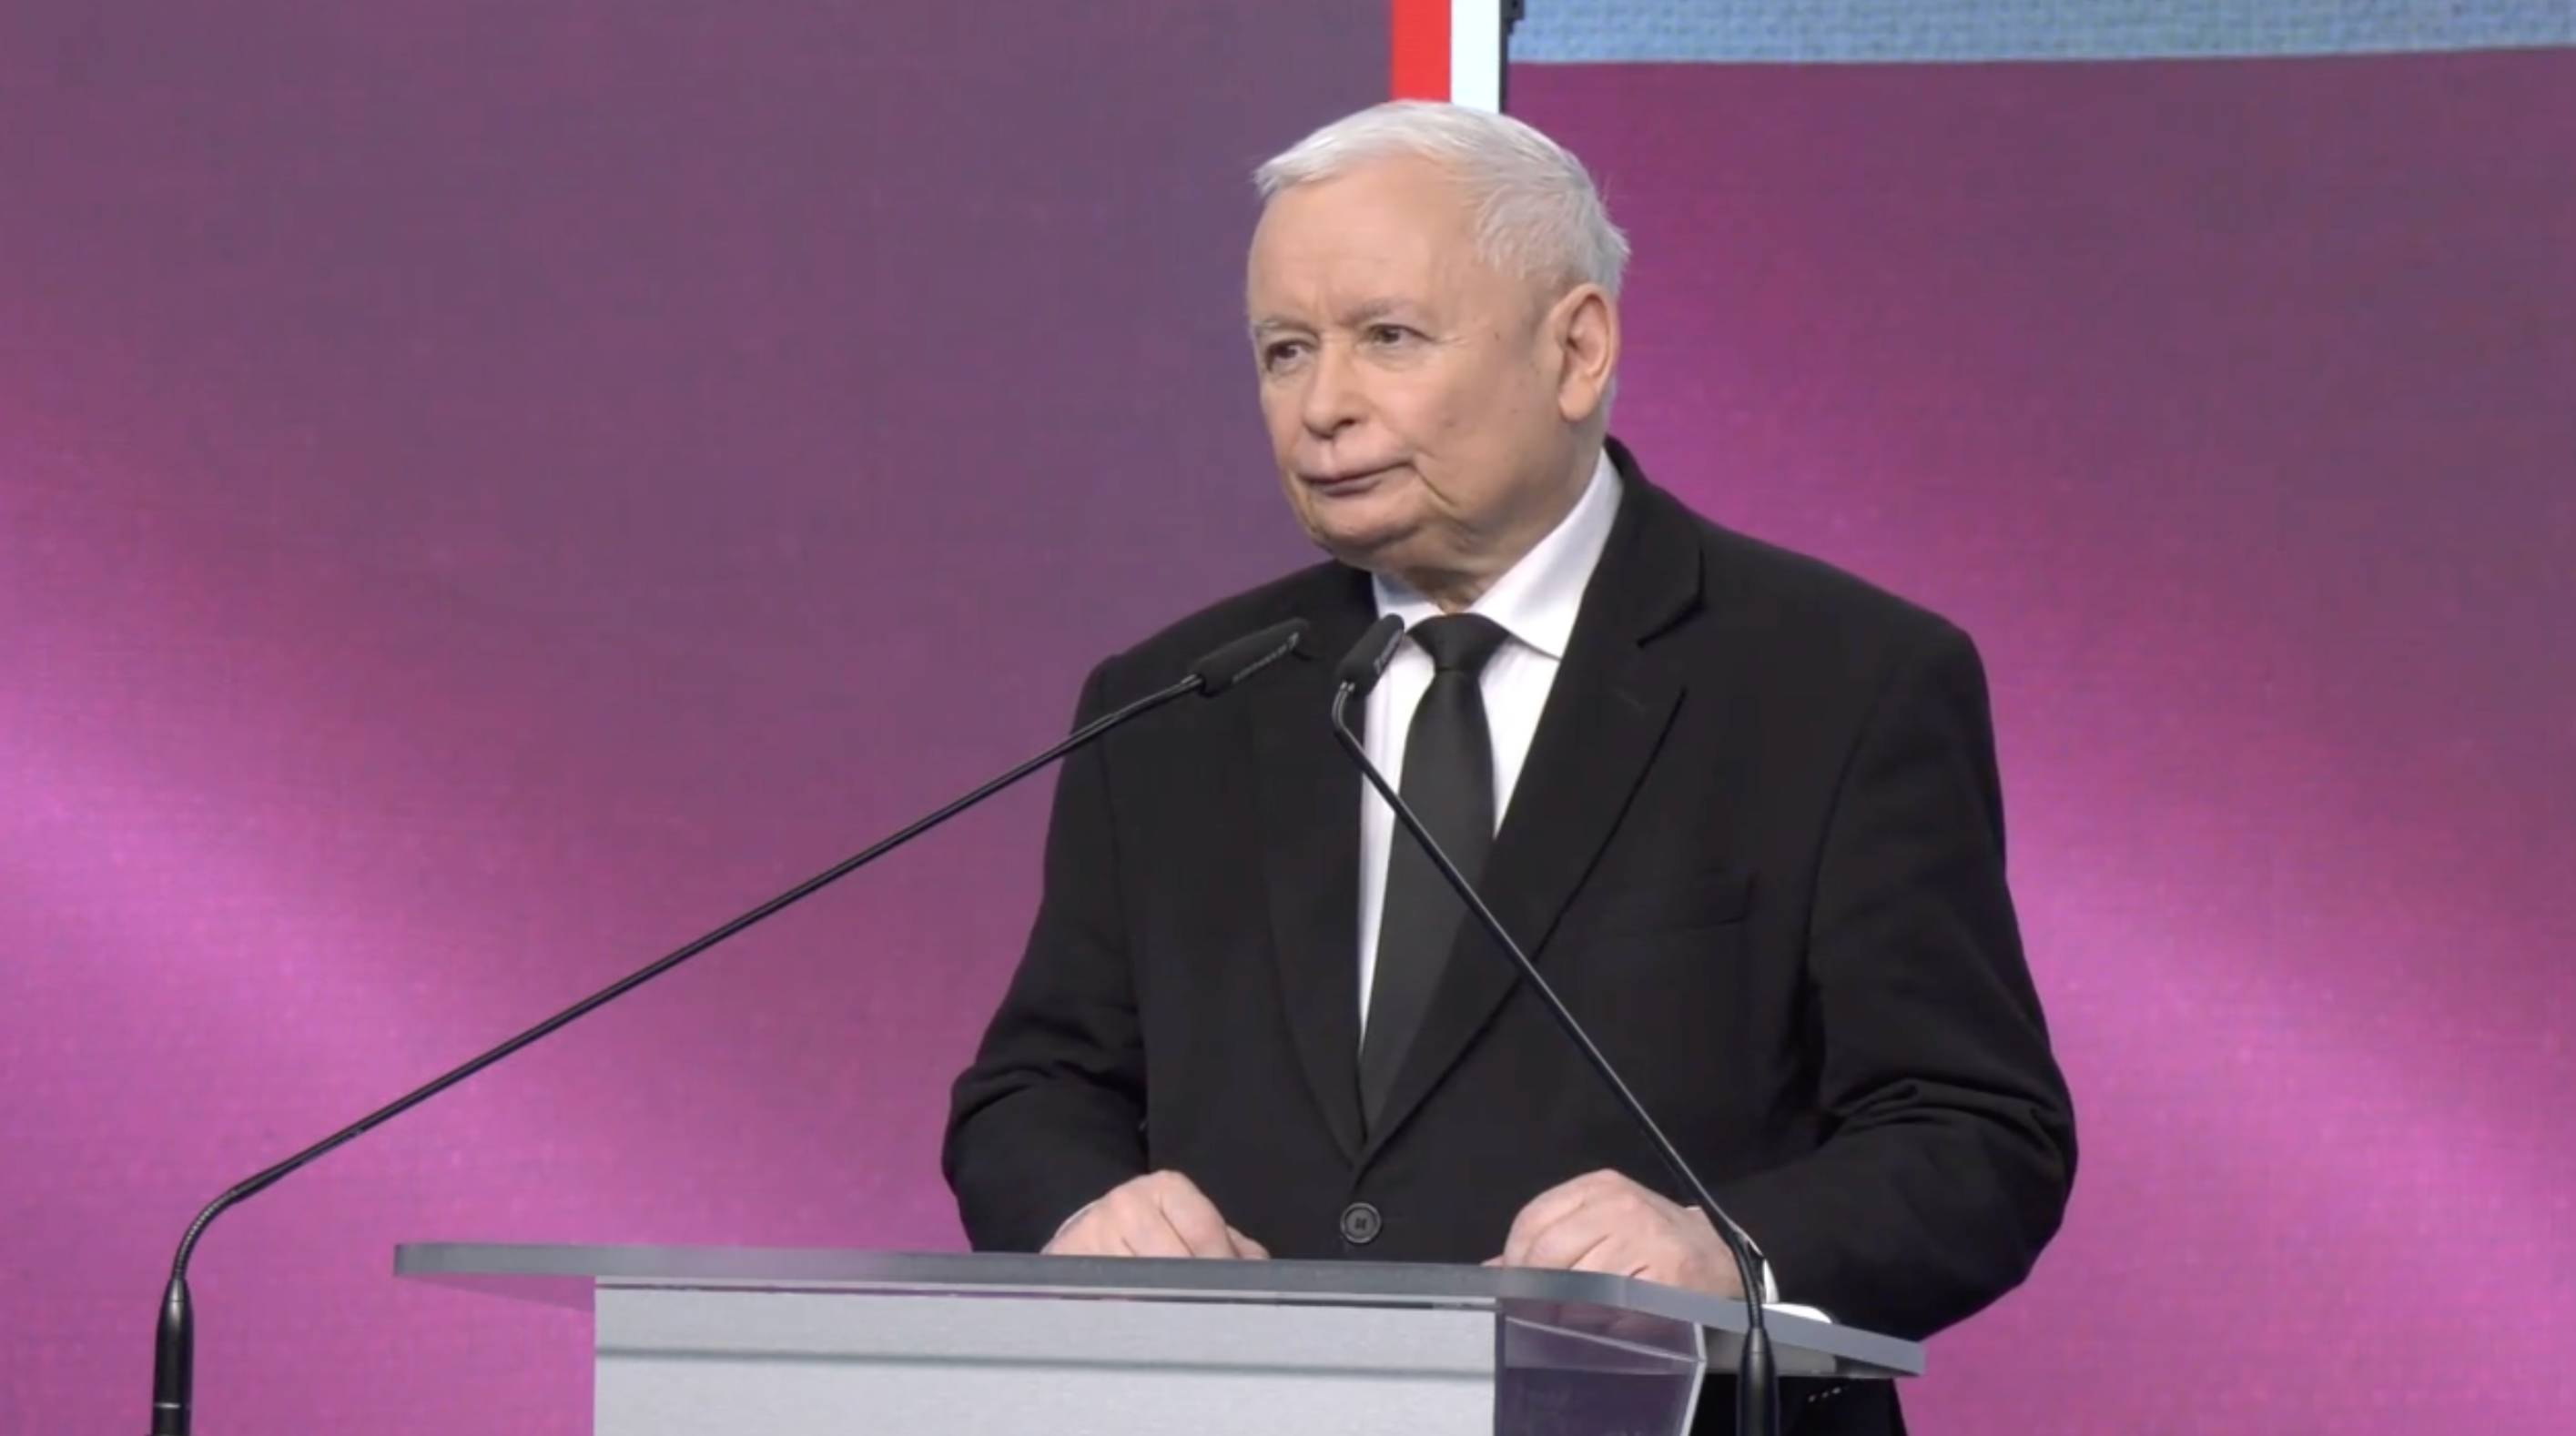 Jarosław Kaczyński przemawia podczas konferencji. Za nim różowo-stalowe tło. Kaczyński ma na sobie biała koszulę i cxarny garnitur i ciemny krawat.